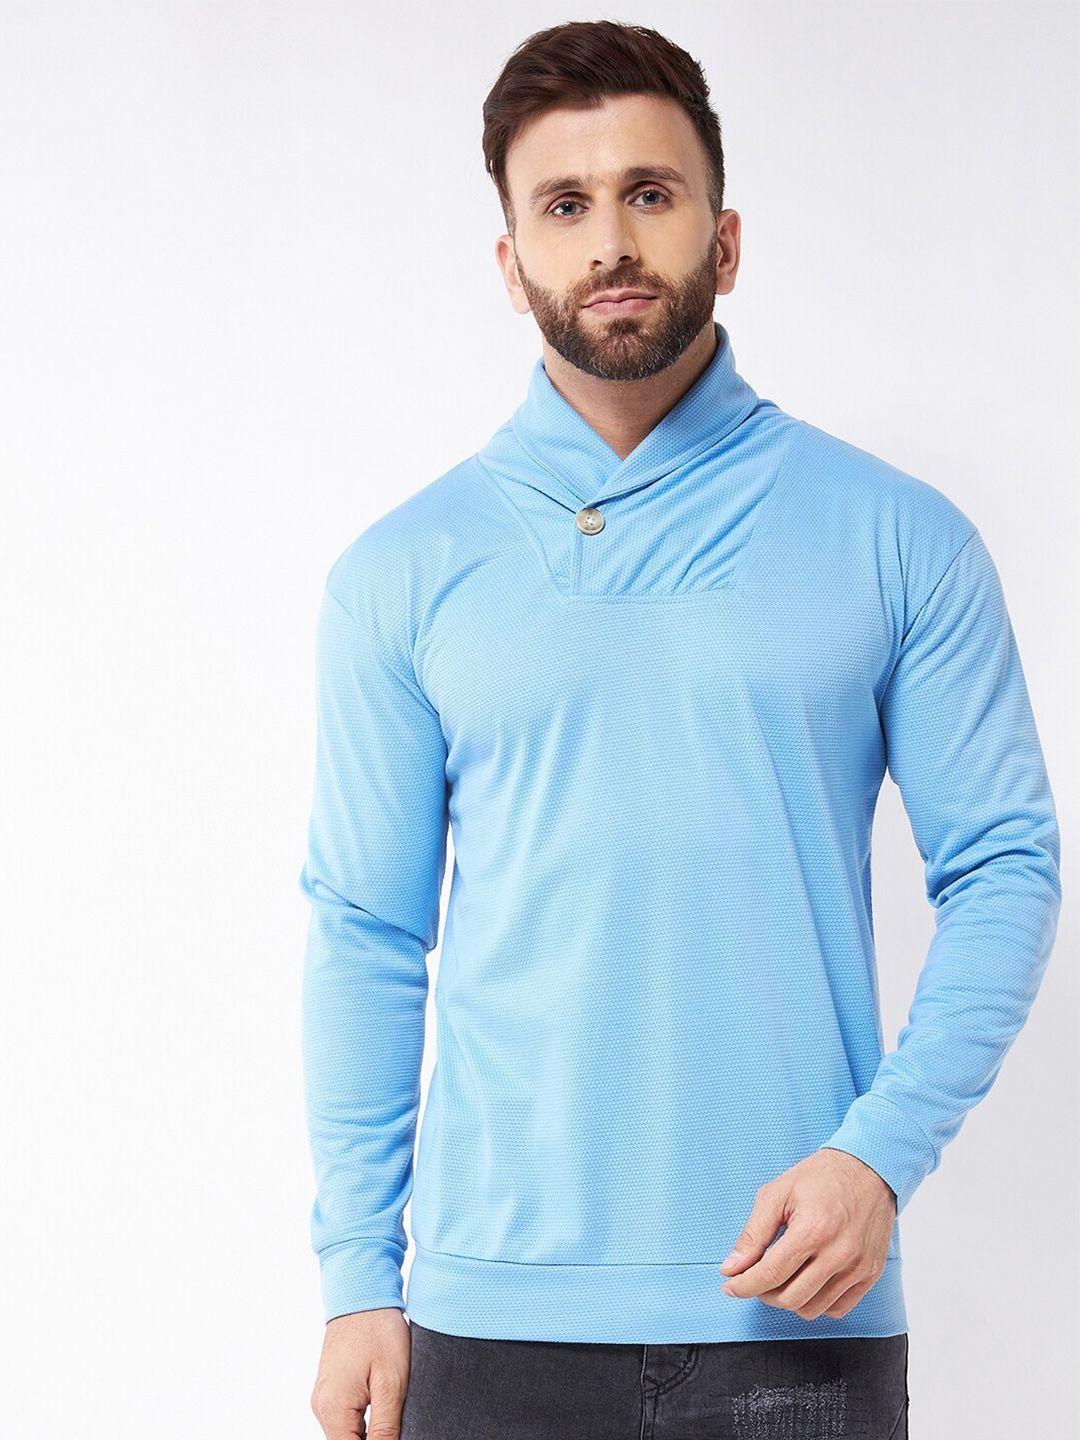 gritstones-men-blue-cotton-sweatshirt